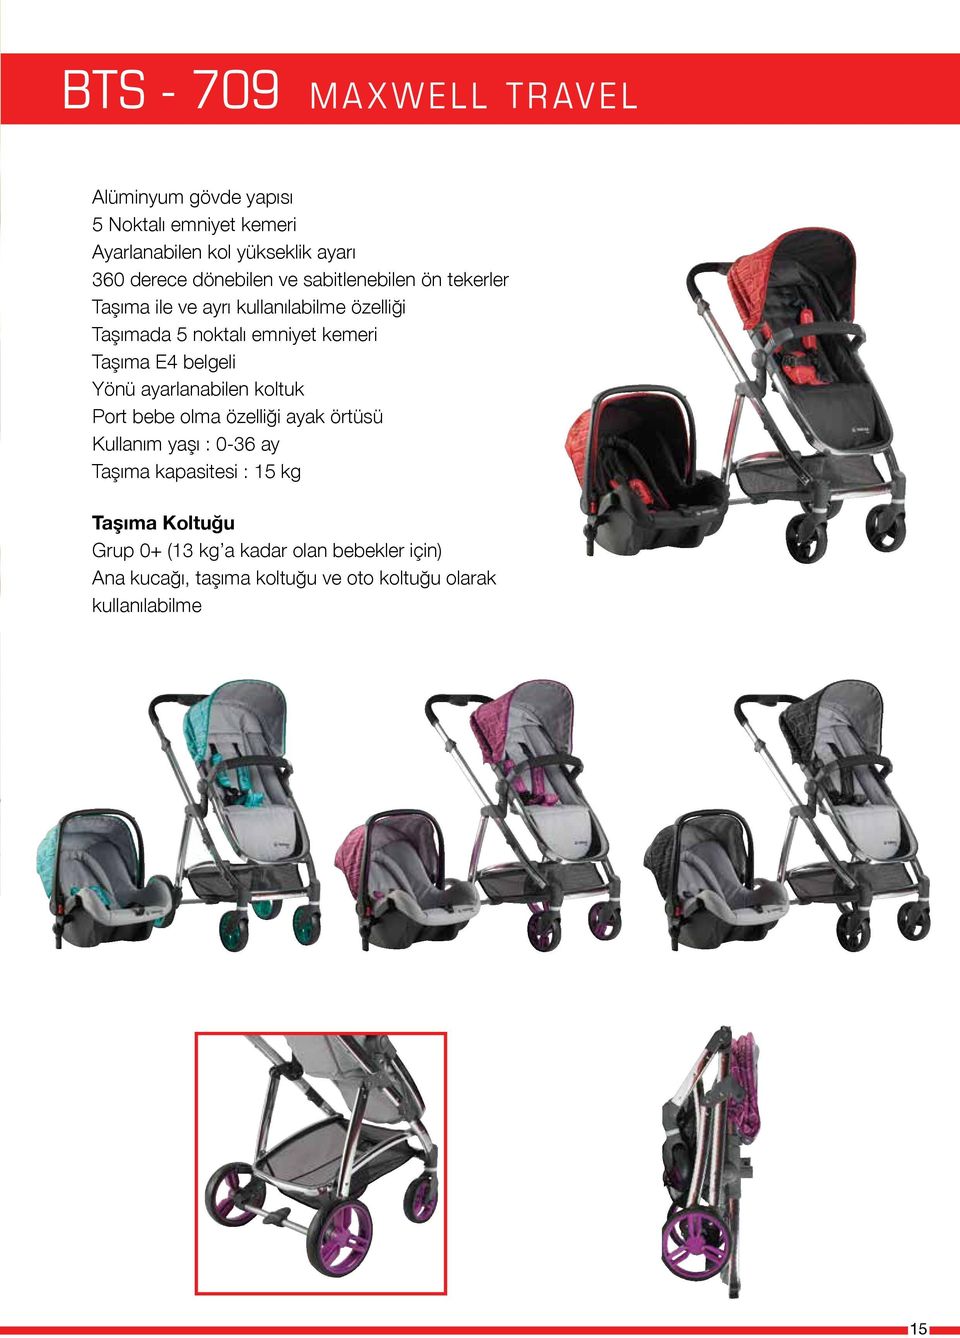 Taşıma E4 belgeli Yönü ayarlanabilen koltuk Port bebe olma özelliği ayak örtüsü Kullanım yaşı : 0-36 ay Taşıma kapasitesi